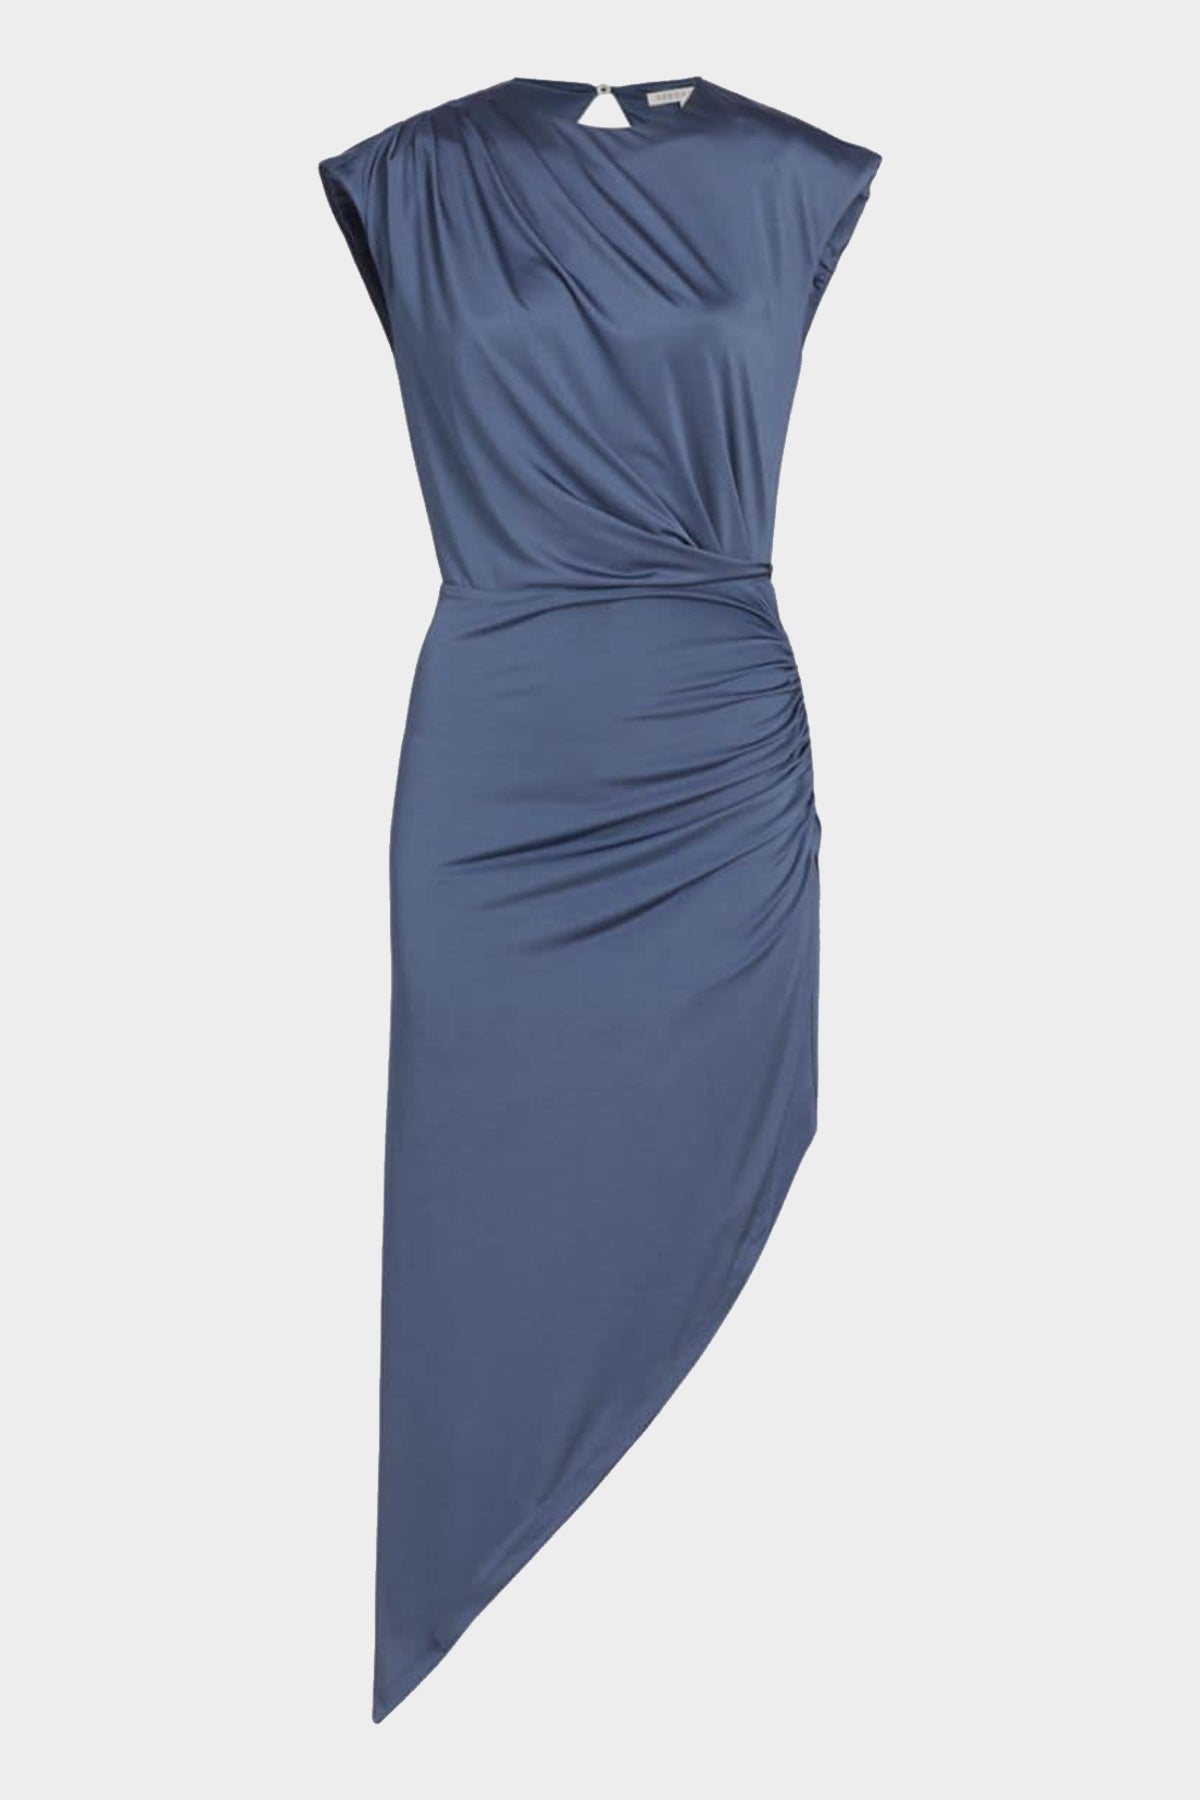 Merrith Dress in Wain - shop-olivia.com